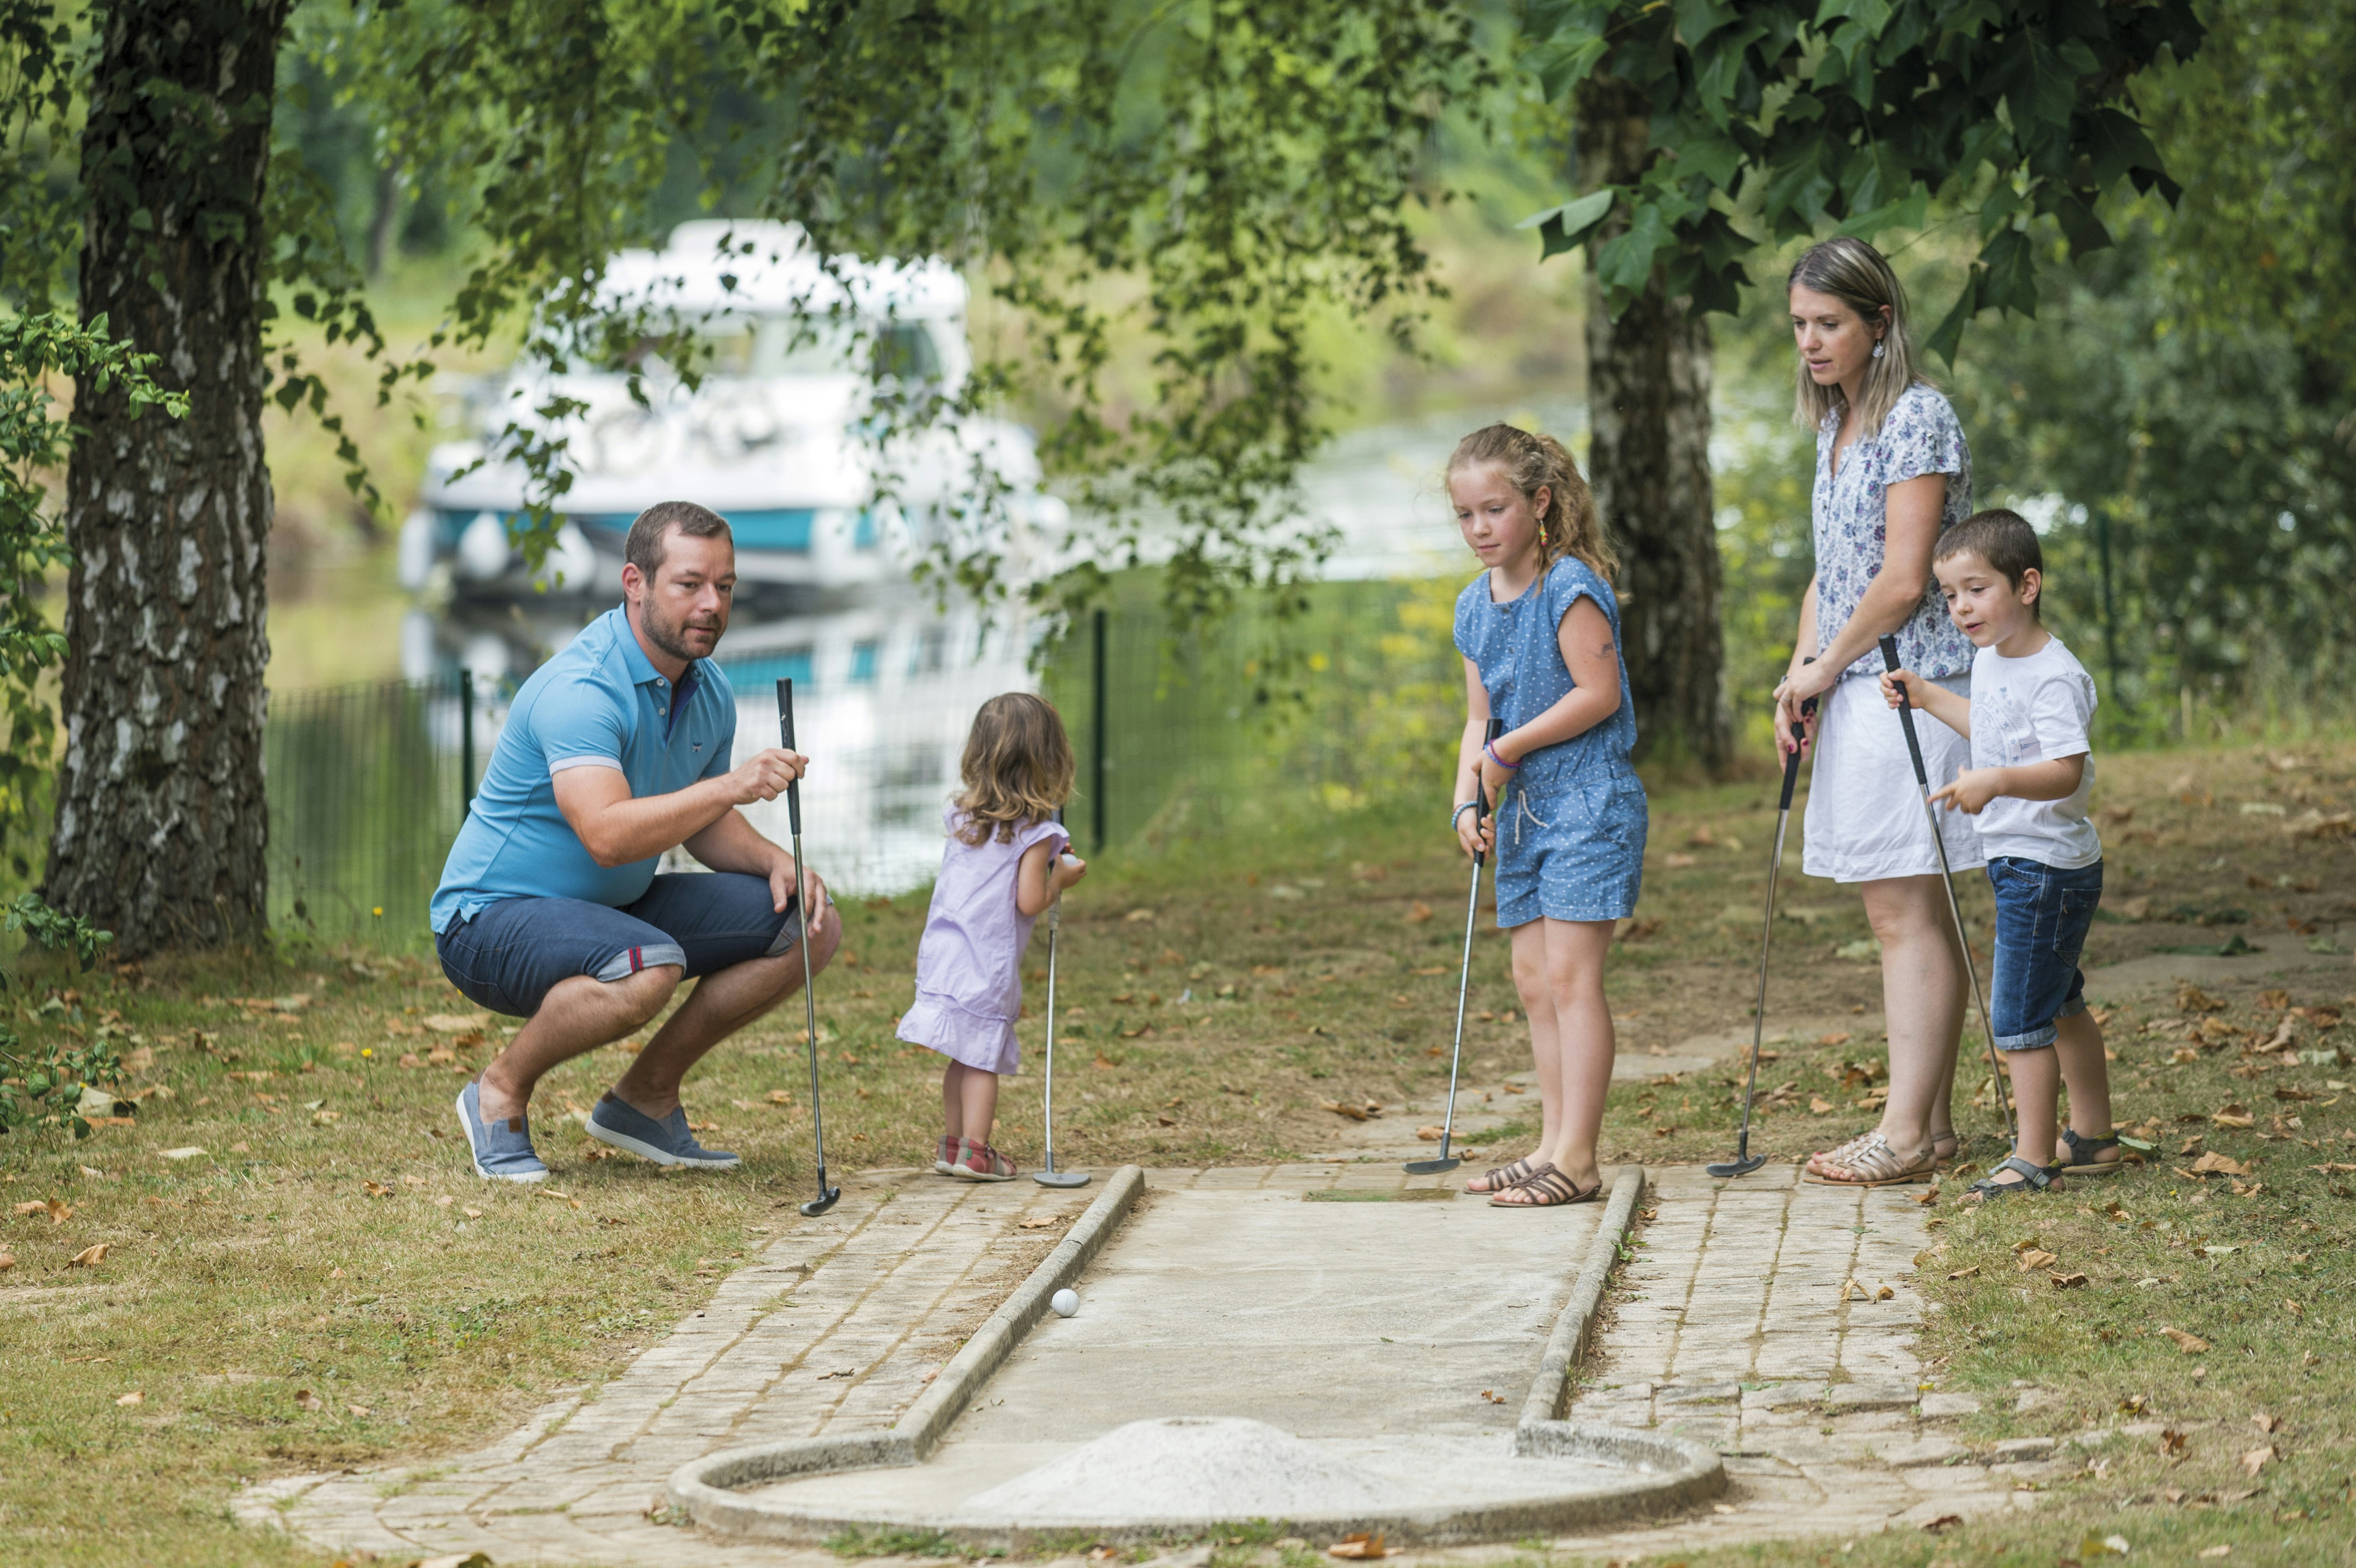 Družina igra mini golf z vodnim kanalom in hišnim čolnom v ozadju